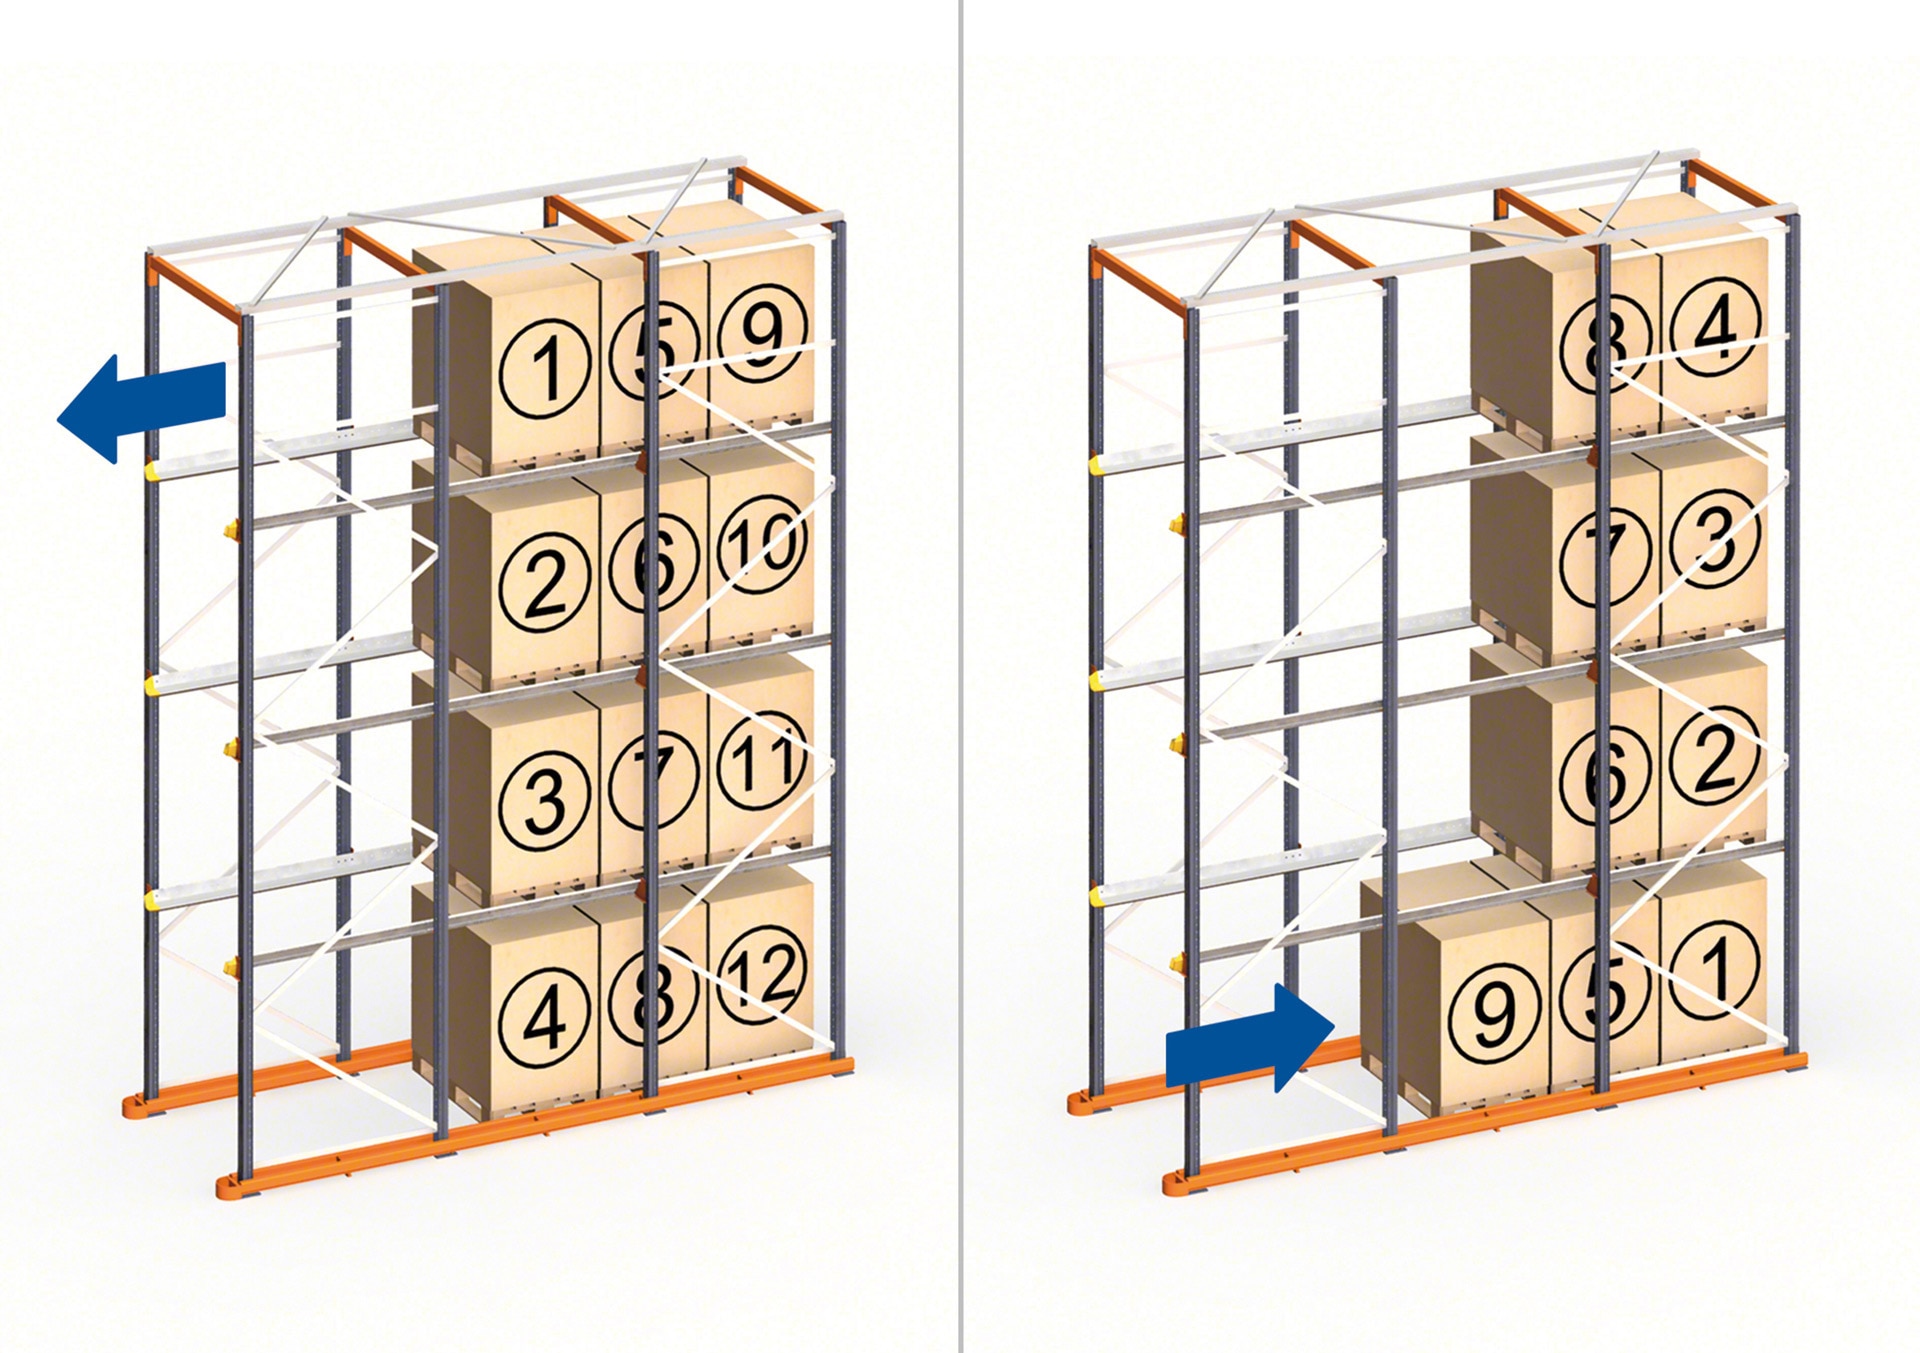 Los racks penetrables drive-in funcionan en depósitos que emplean el método de orden de carga LIFO